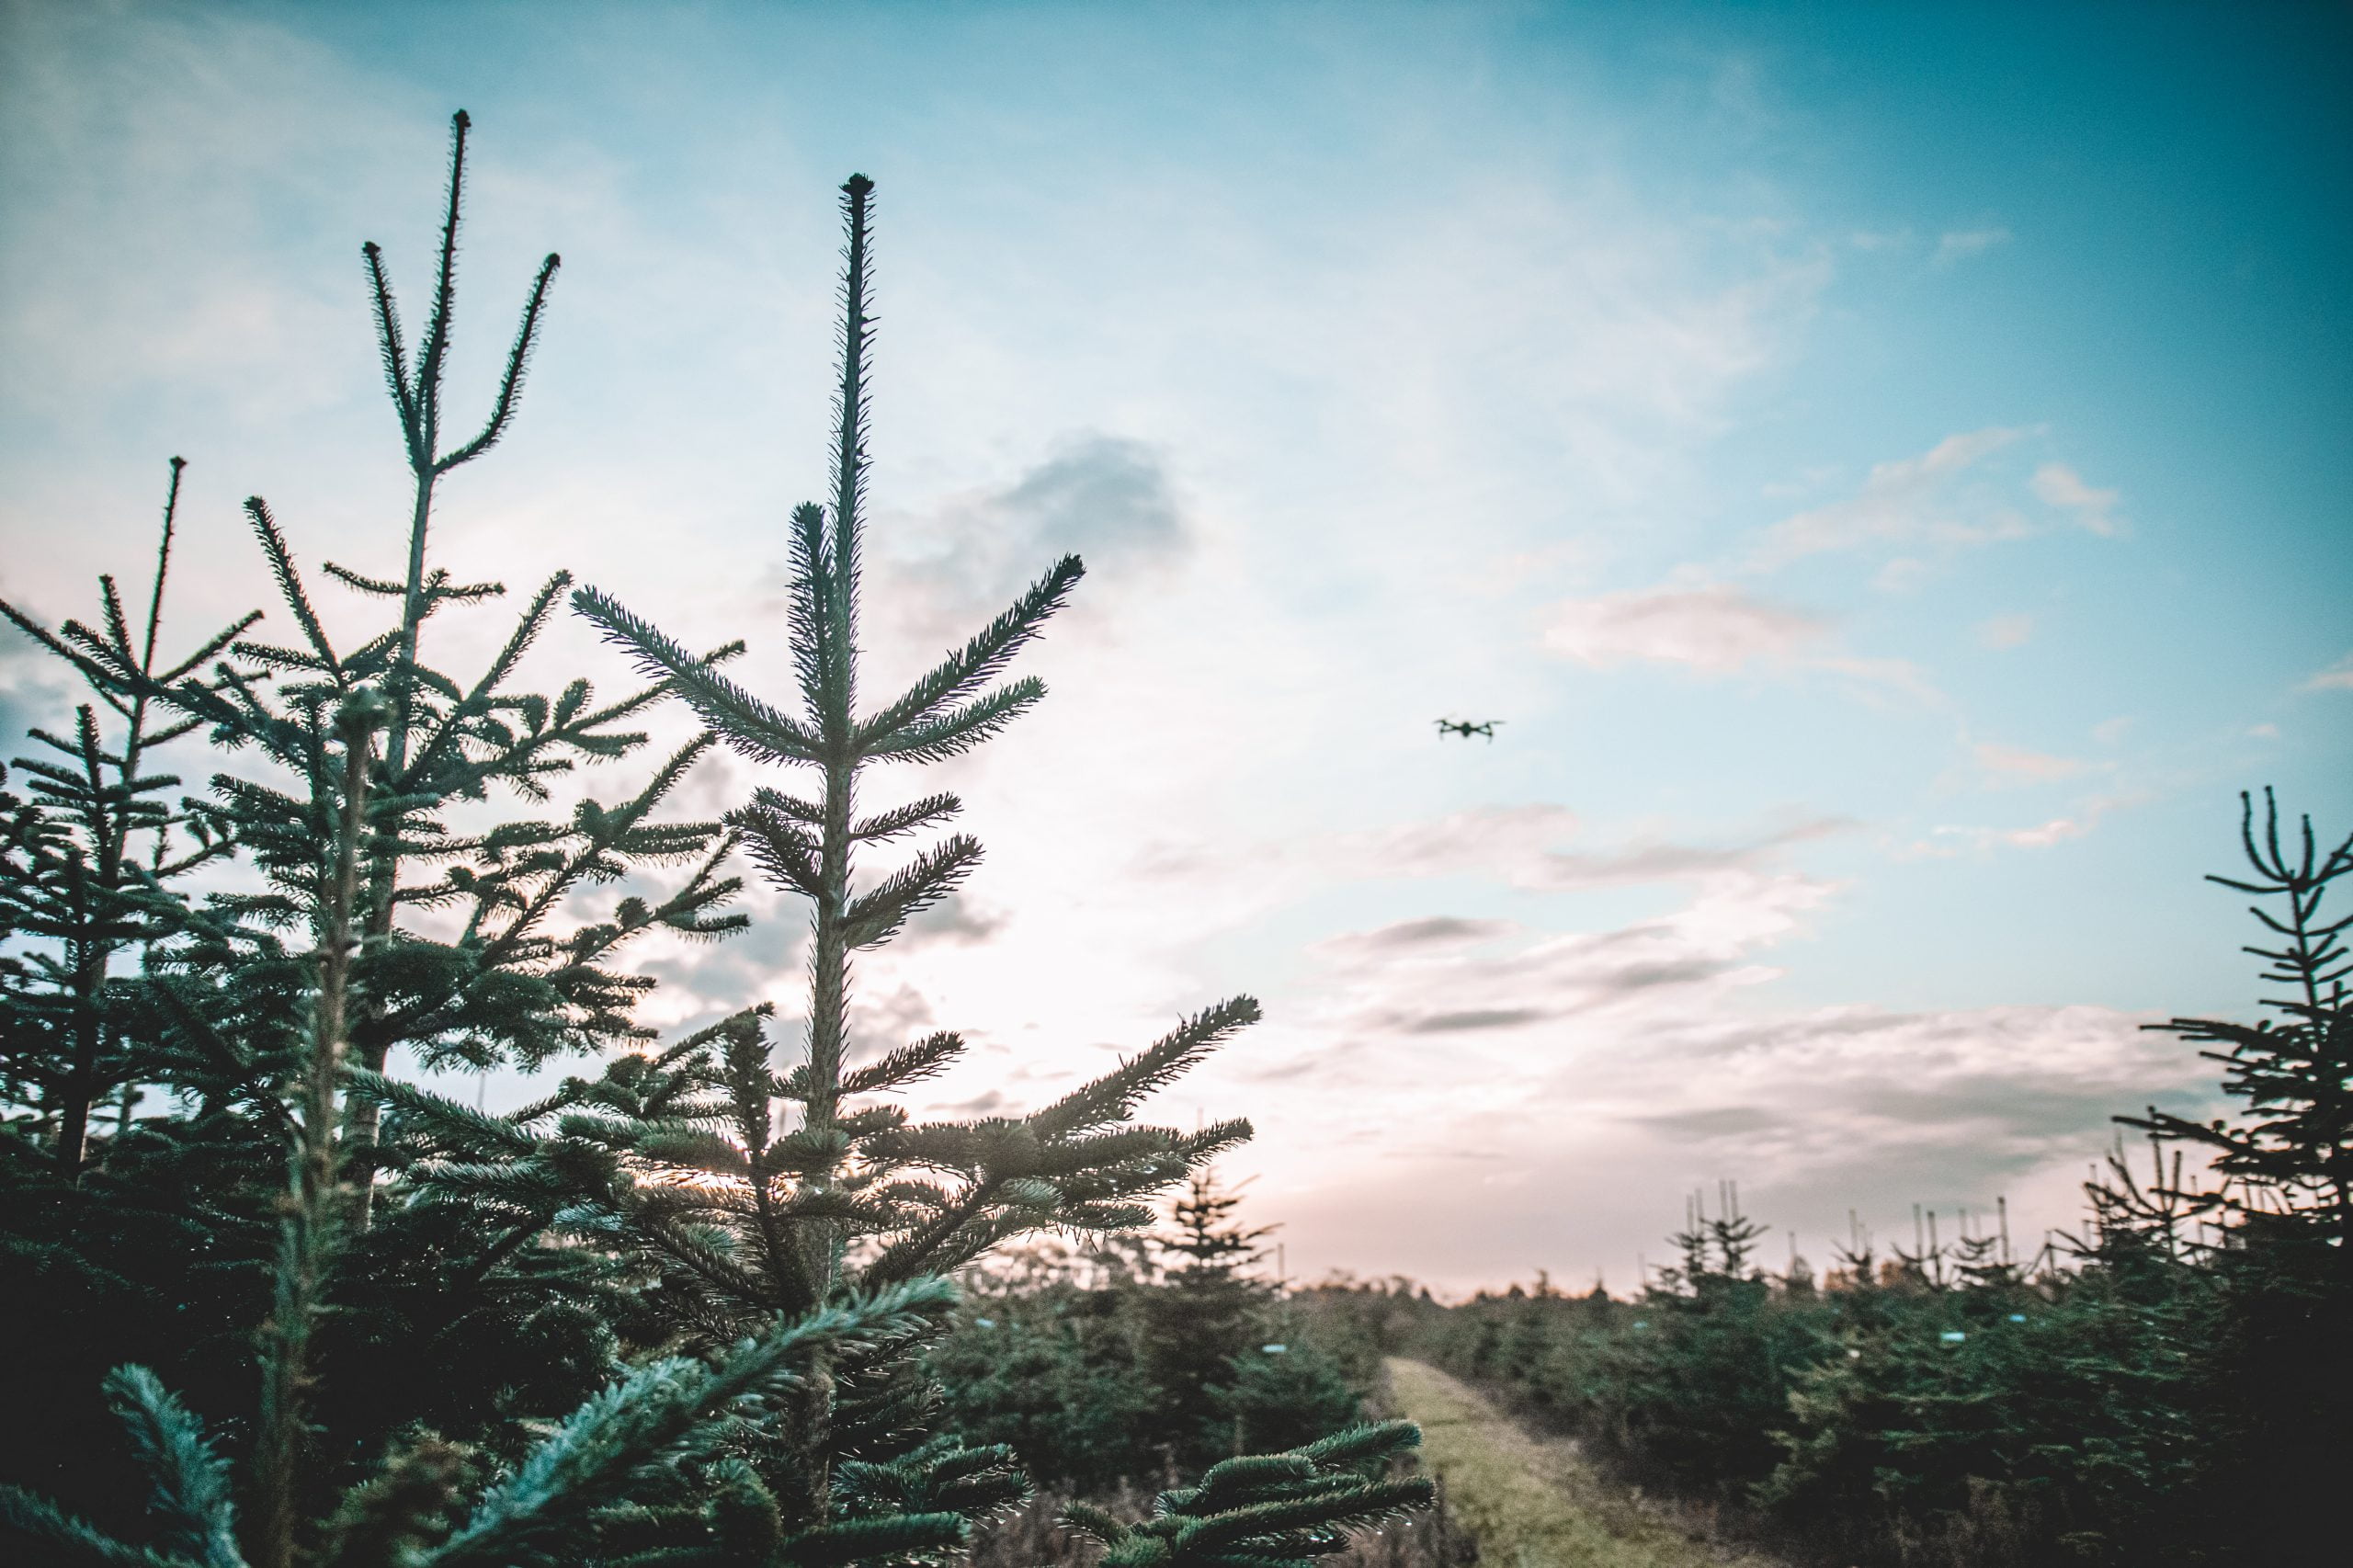 Kerstbomen groothandel Nederland - Kerstbomen verkopen?